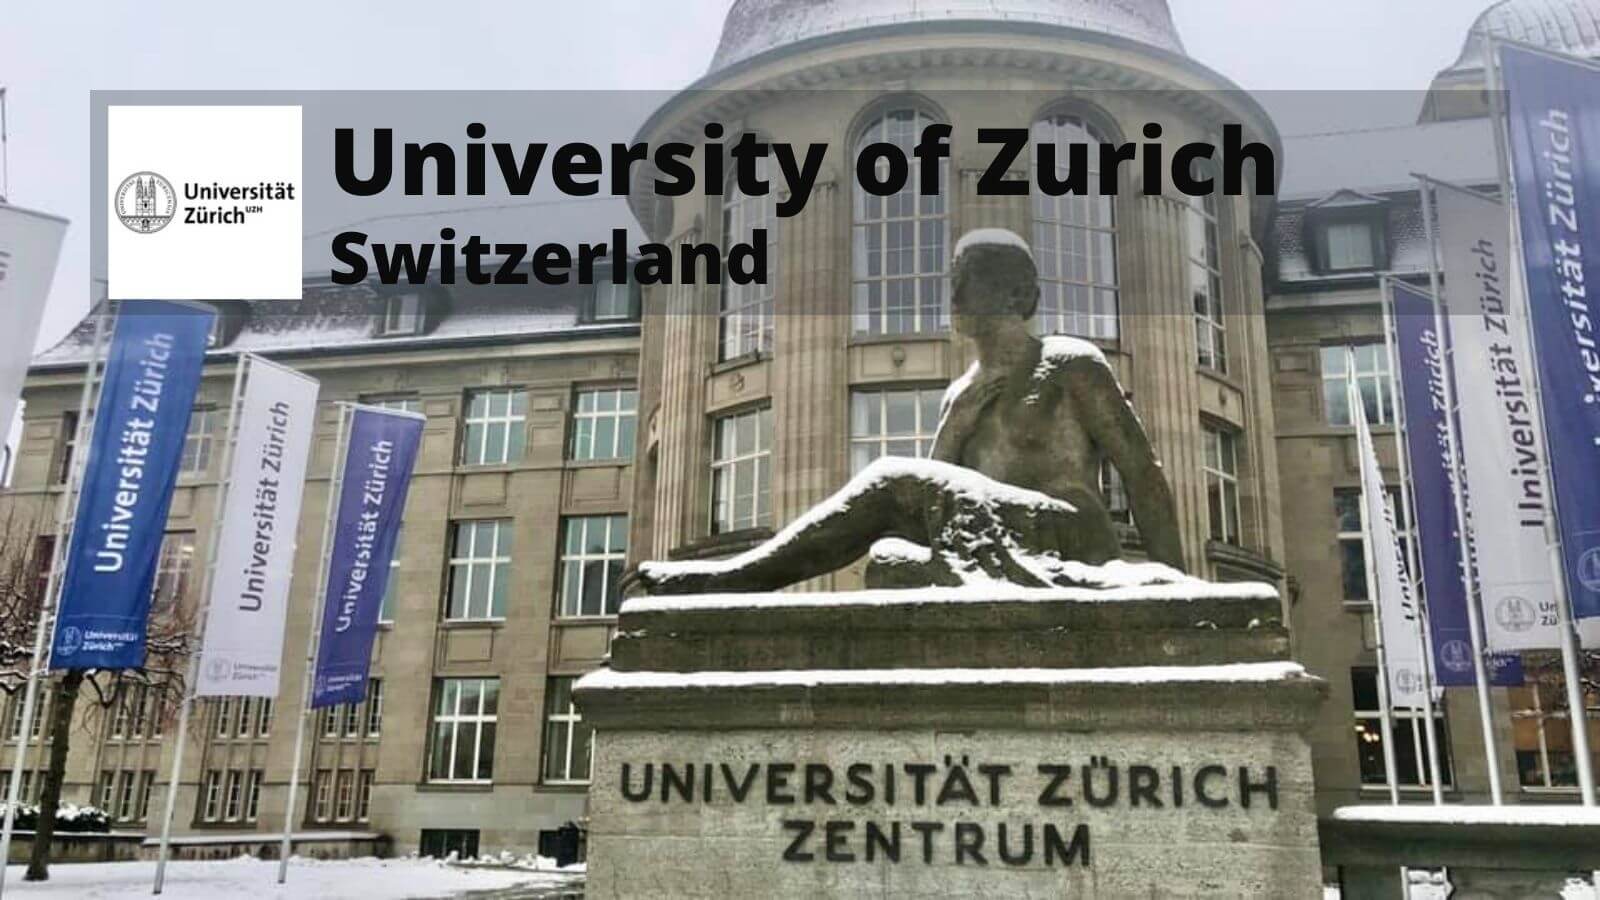 University of Zurich UZH Switzerland